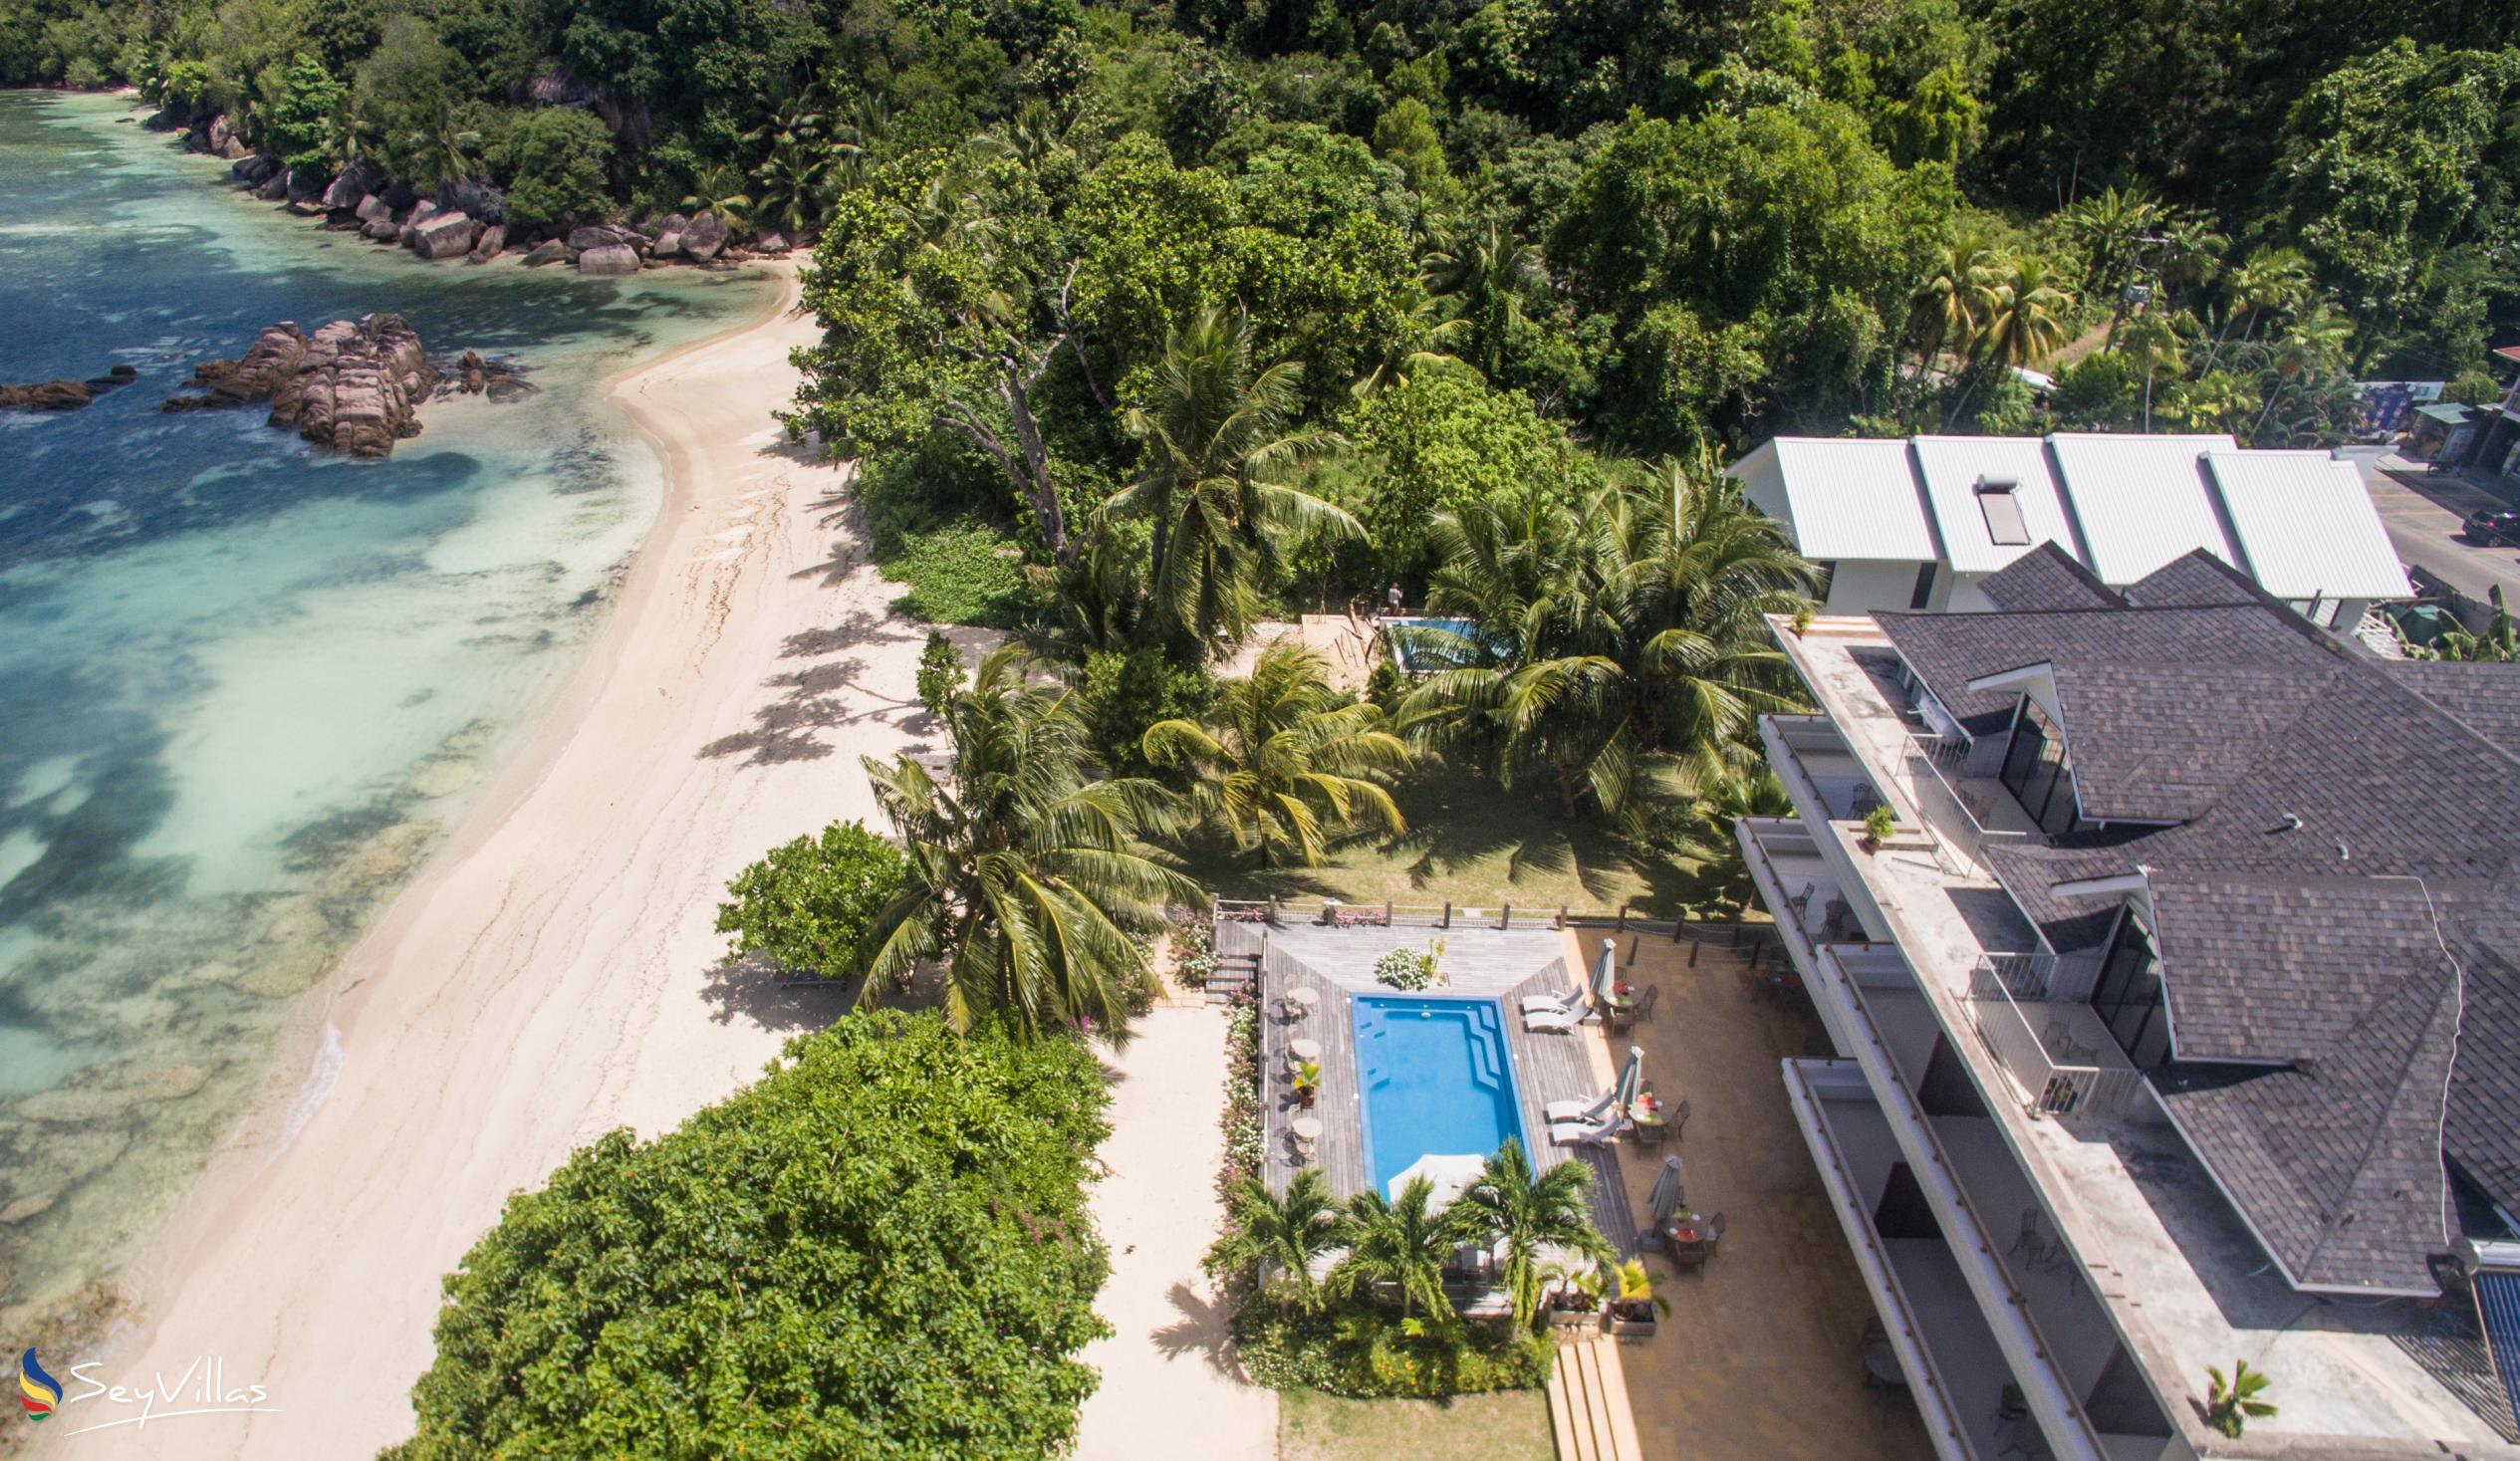 Photo 4: Crown Beach Hotel - Outdoor area - Mahé (Seychelles)